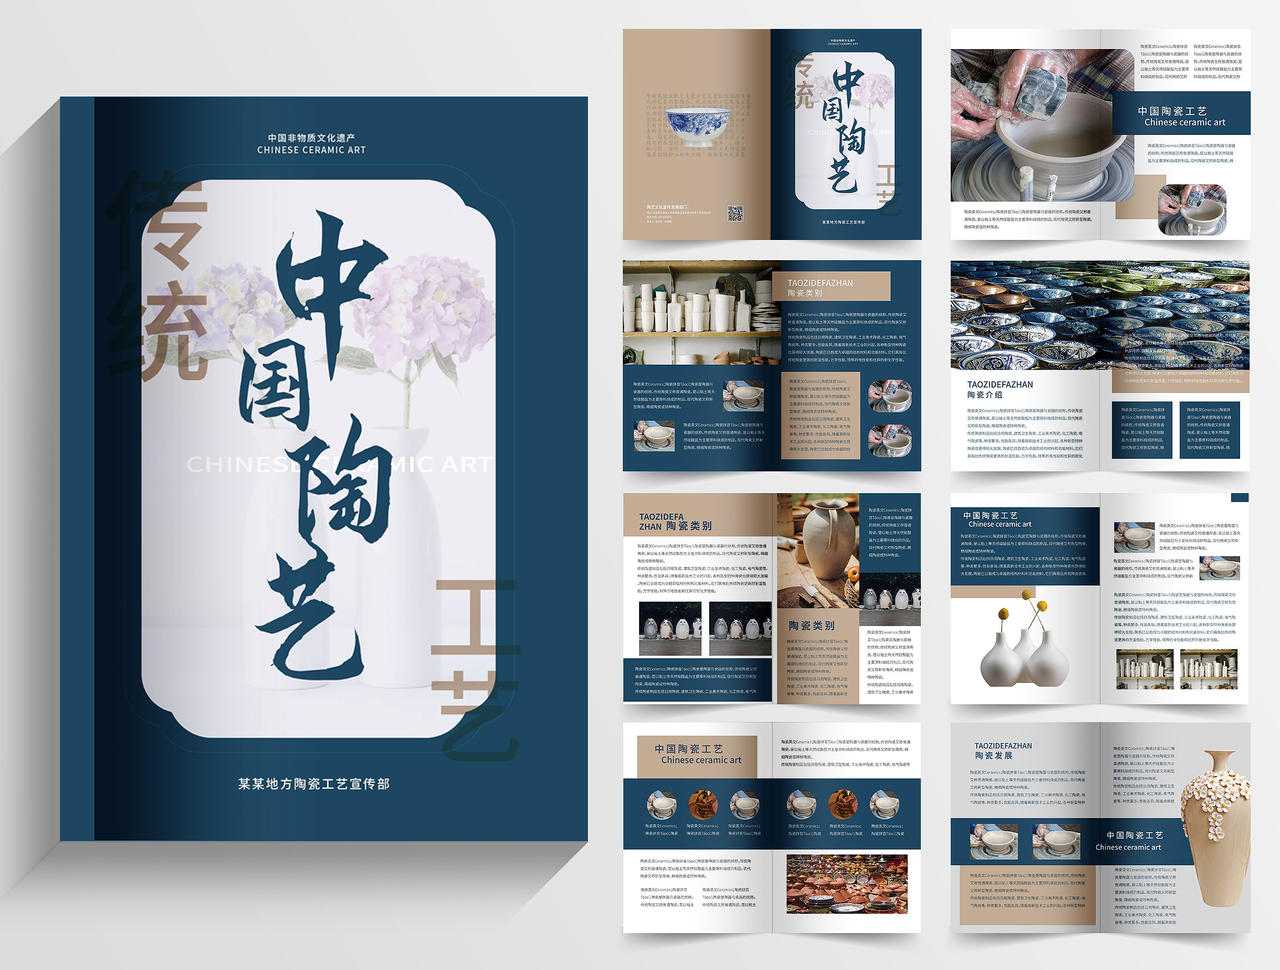 蓝色背景创意中国风中国陶艺陶瓷宣传画册整套设计陶瓷画册